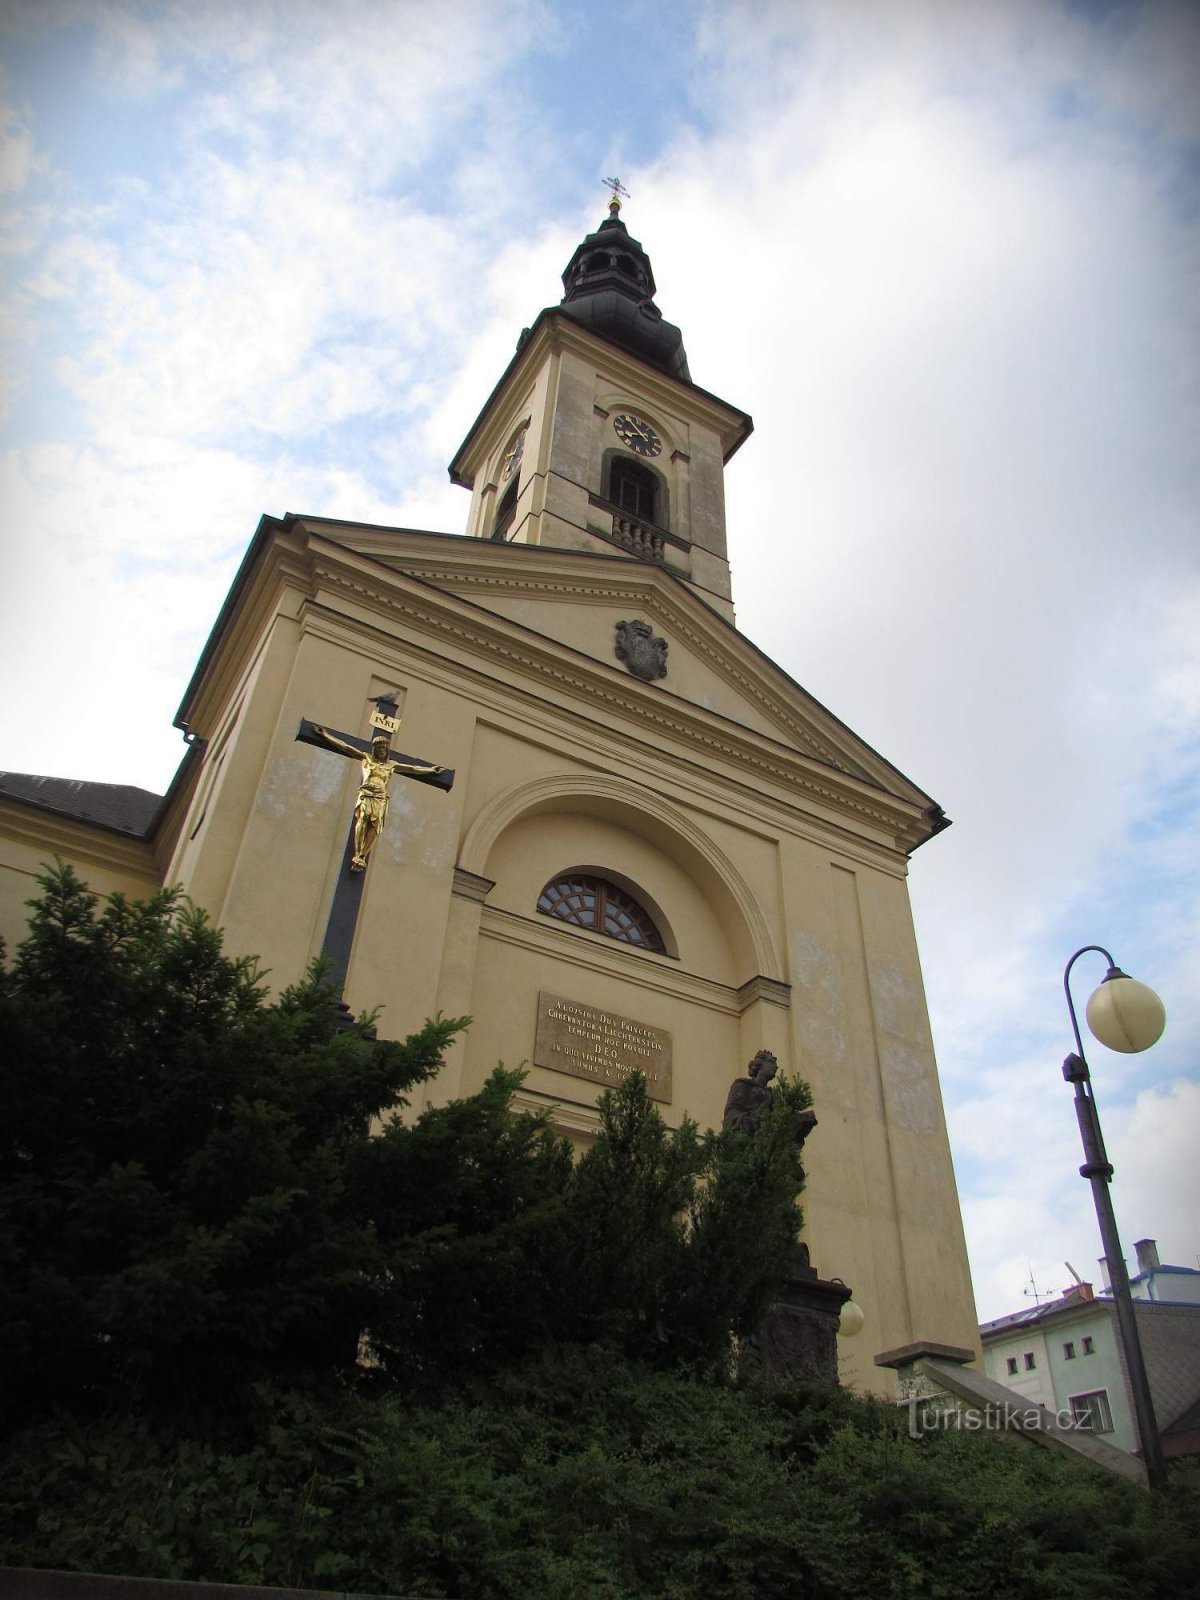 Česká Třebová - Biserica Decanului Sf. Iacob